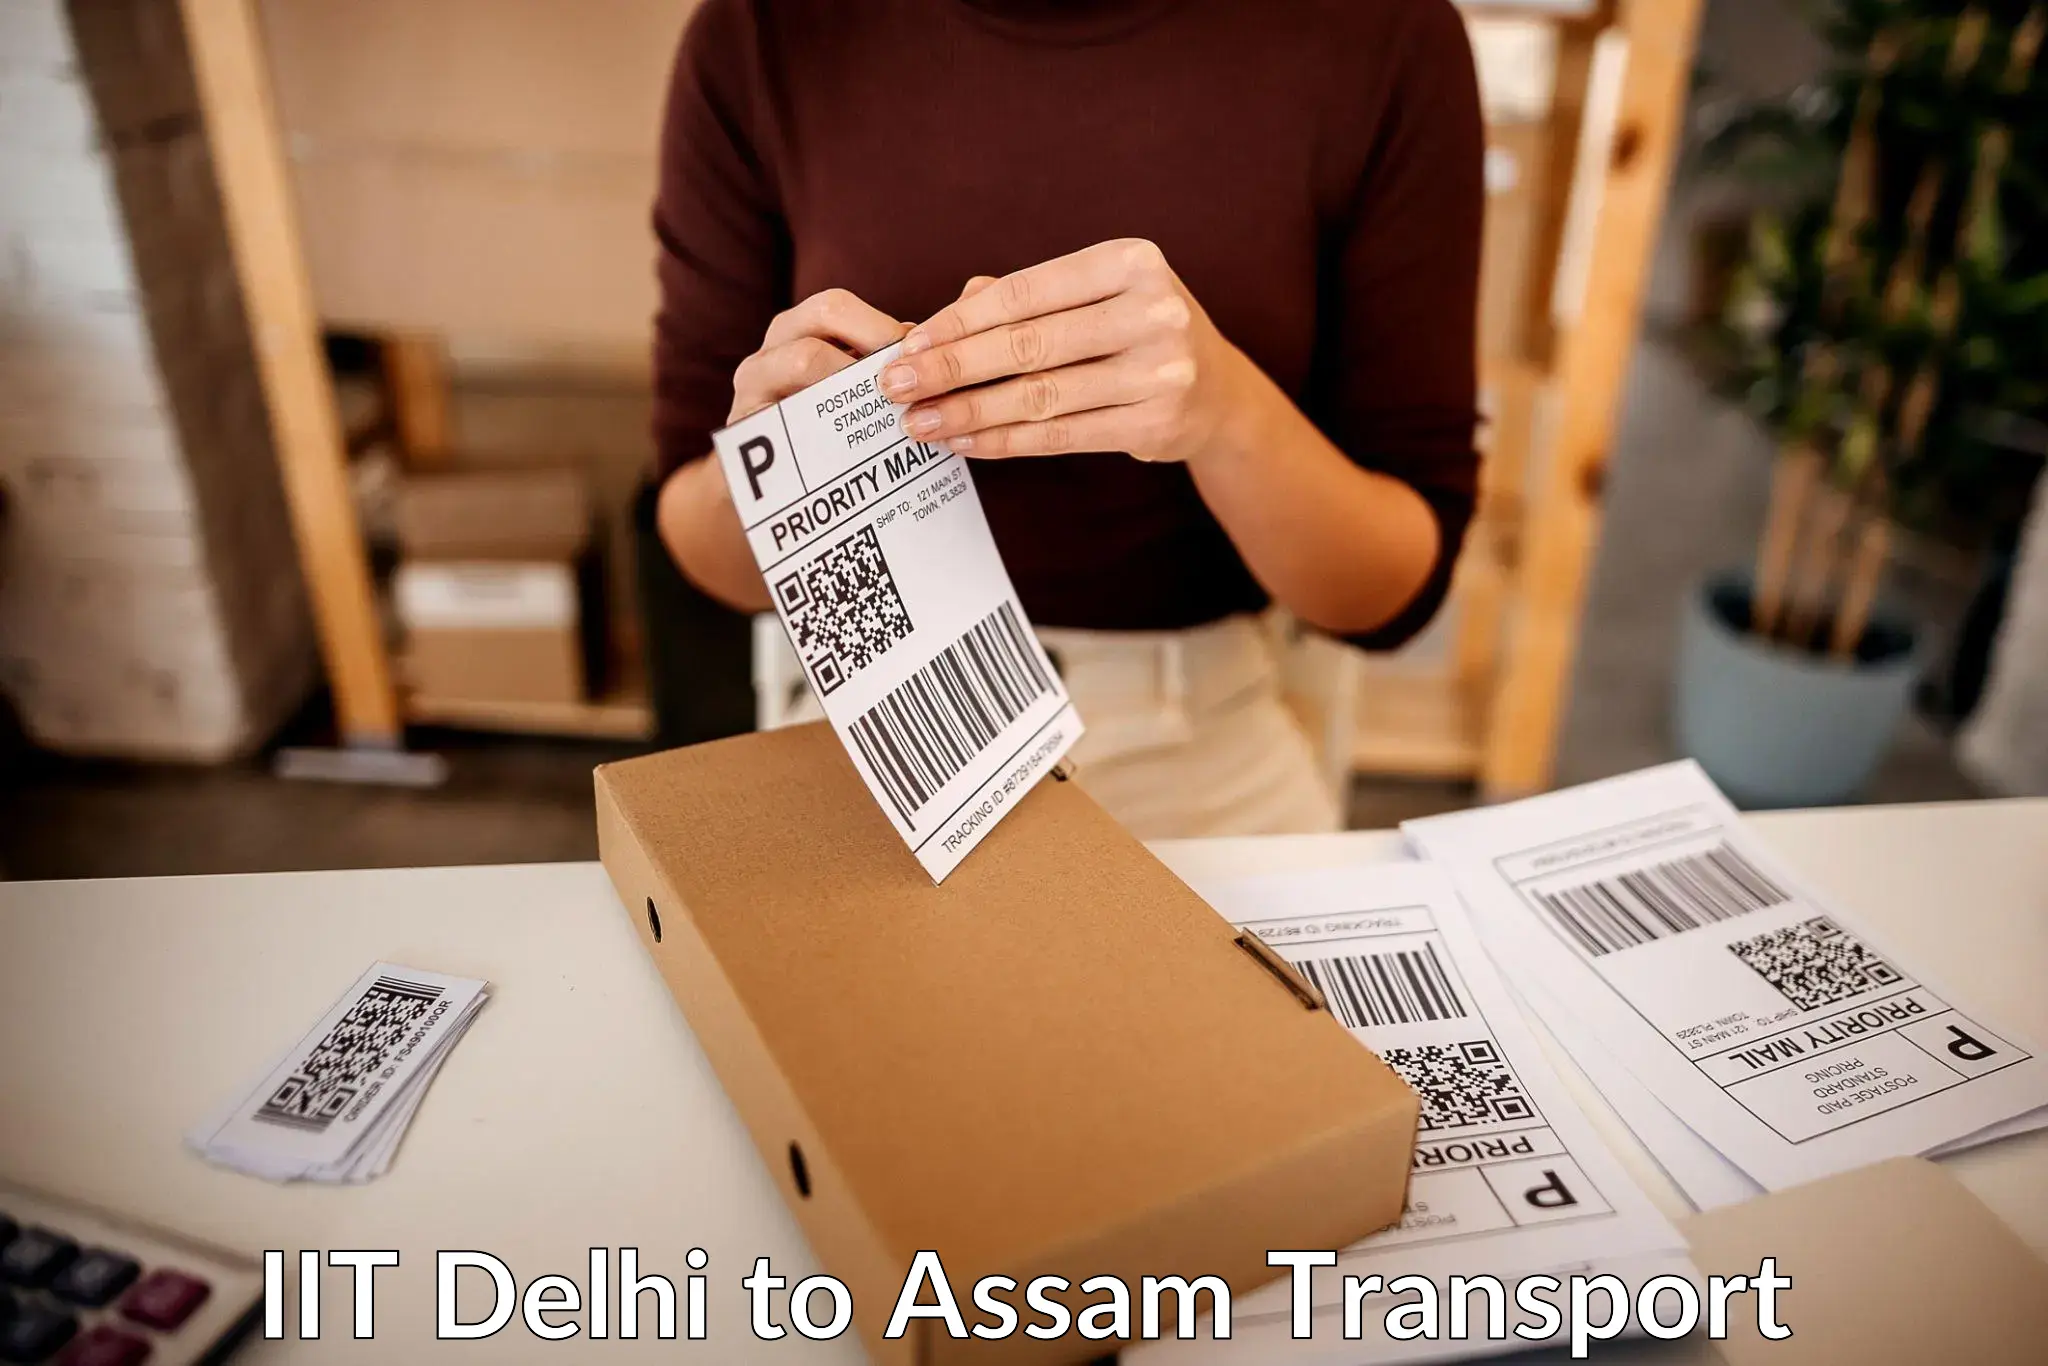 Online transport service IIT Delhi to Goalpara